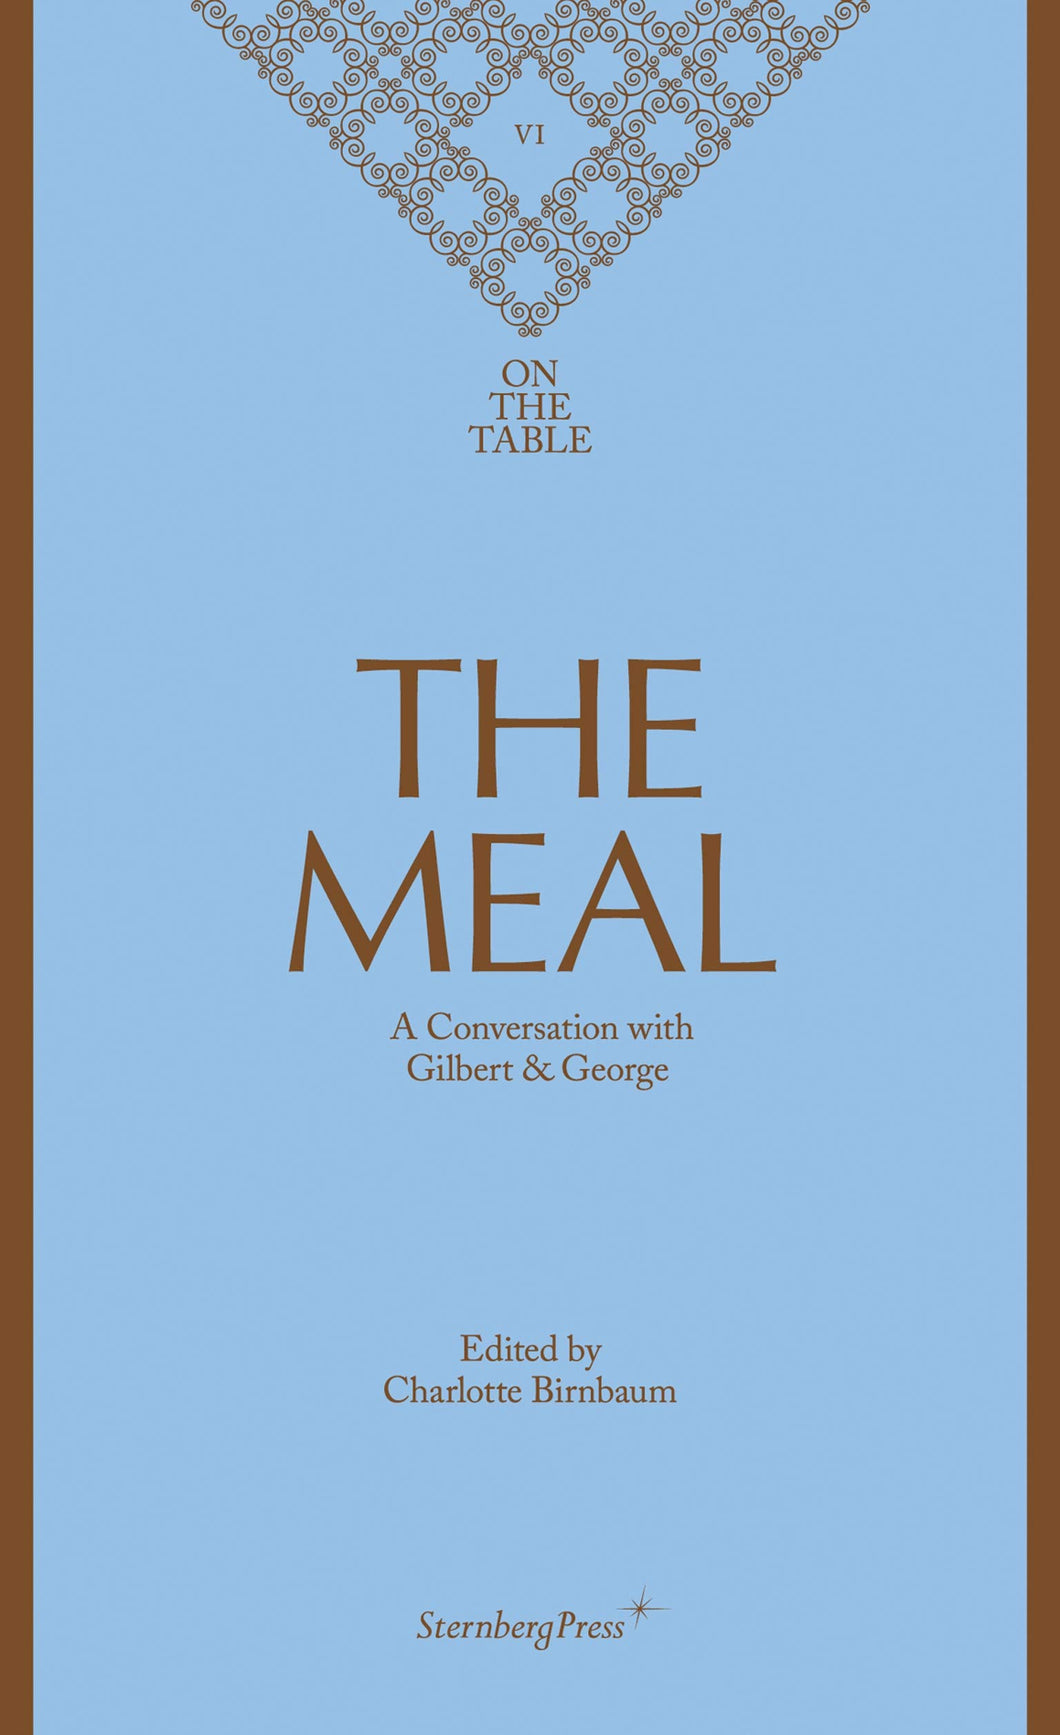 The Meal : A Conversation with Gilbert & George ร้านหนังสือและสิ่งของ เป็นร้านหนังสือภาษาอังกฤษหายาก และร้านกาแฟ หรือ บุ๊คคาเฟ่ ตั้งอยู่สุขุมวิท กรุงเทพ